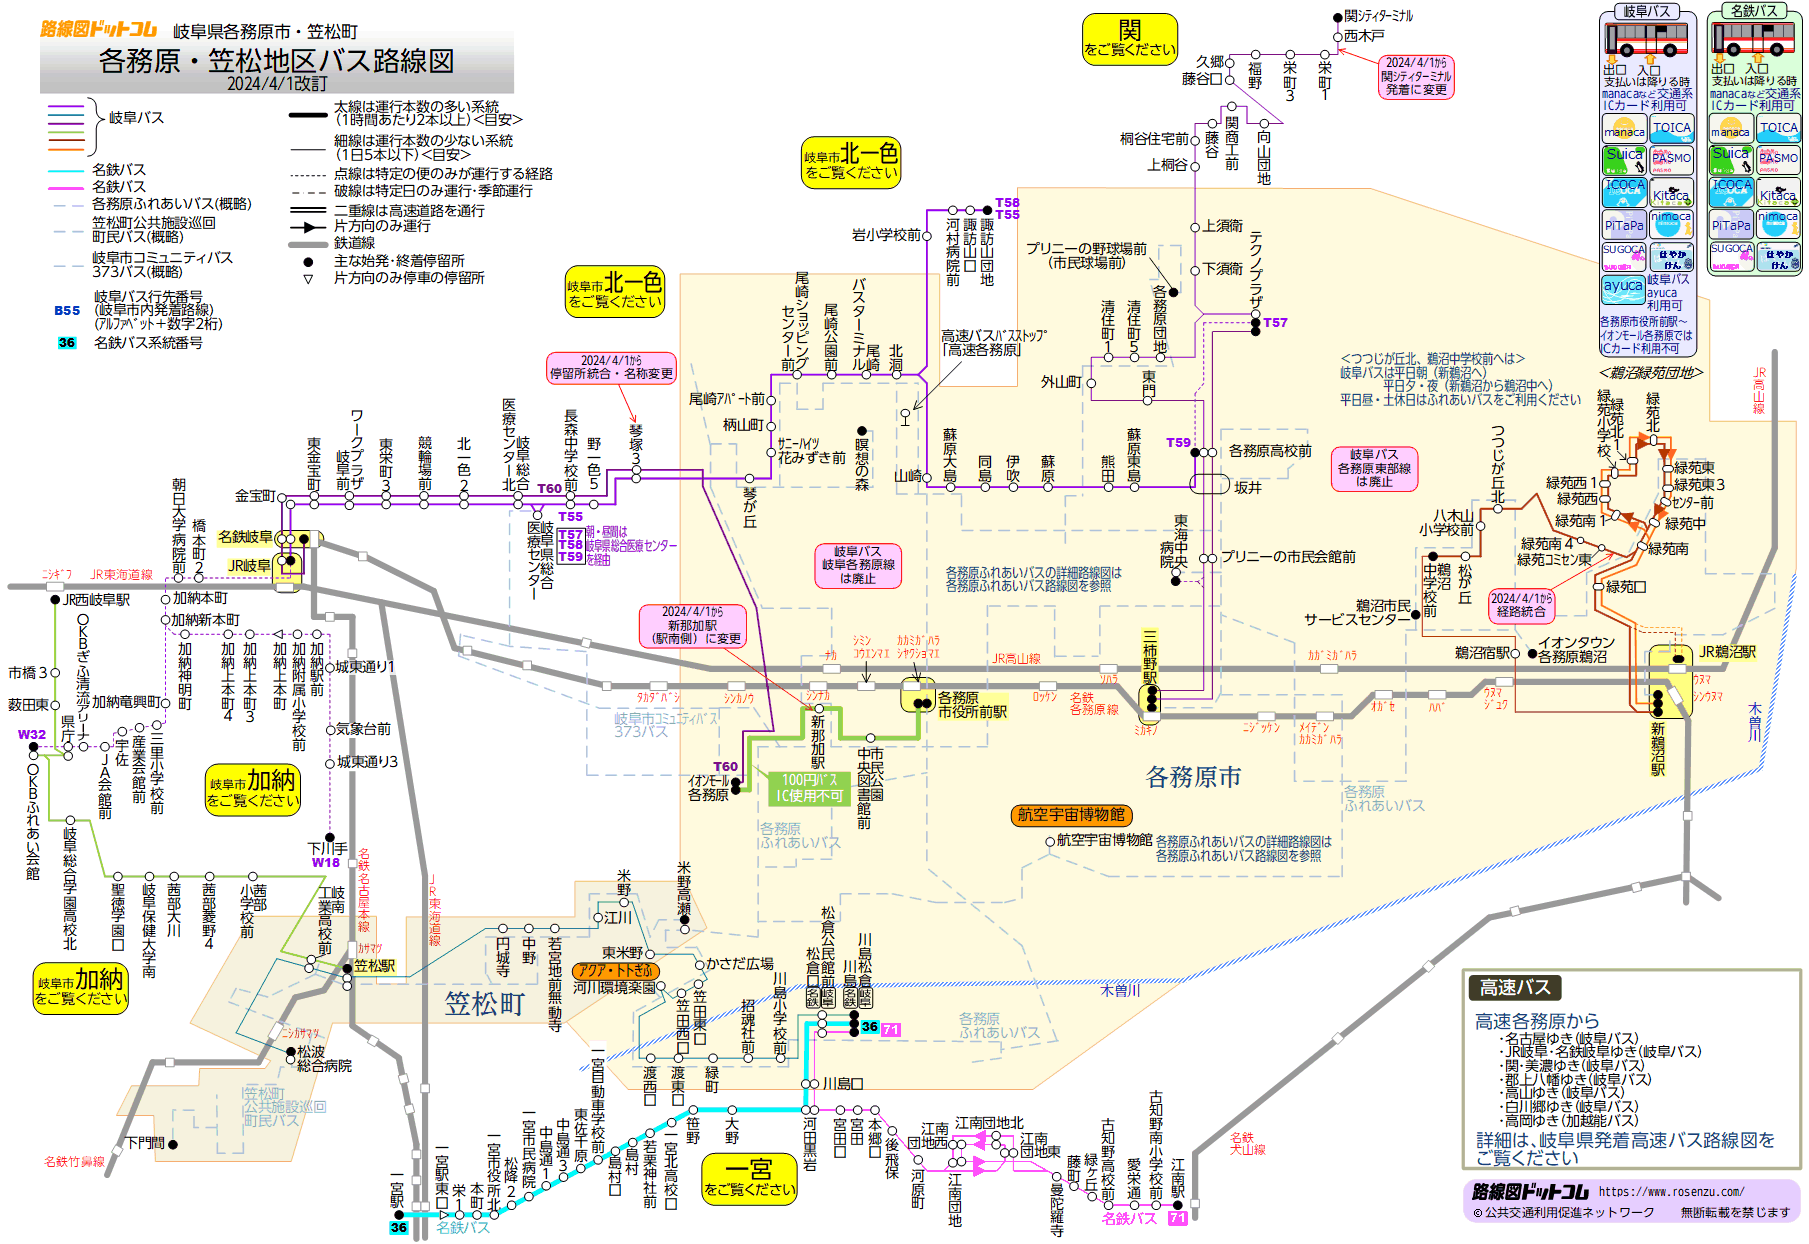 路線図ドットコム 岐阜県 各務原 笠松地区バス路線図